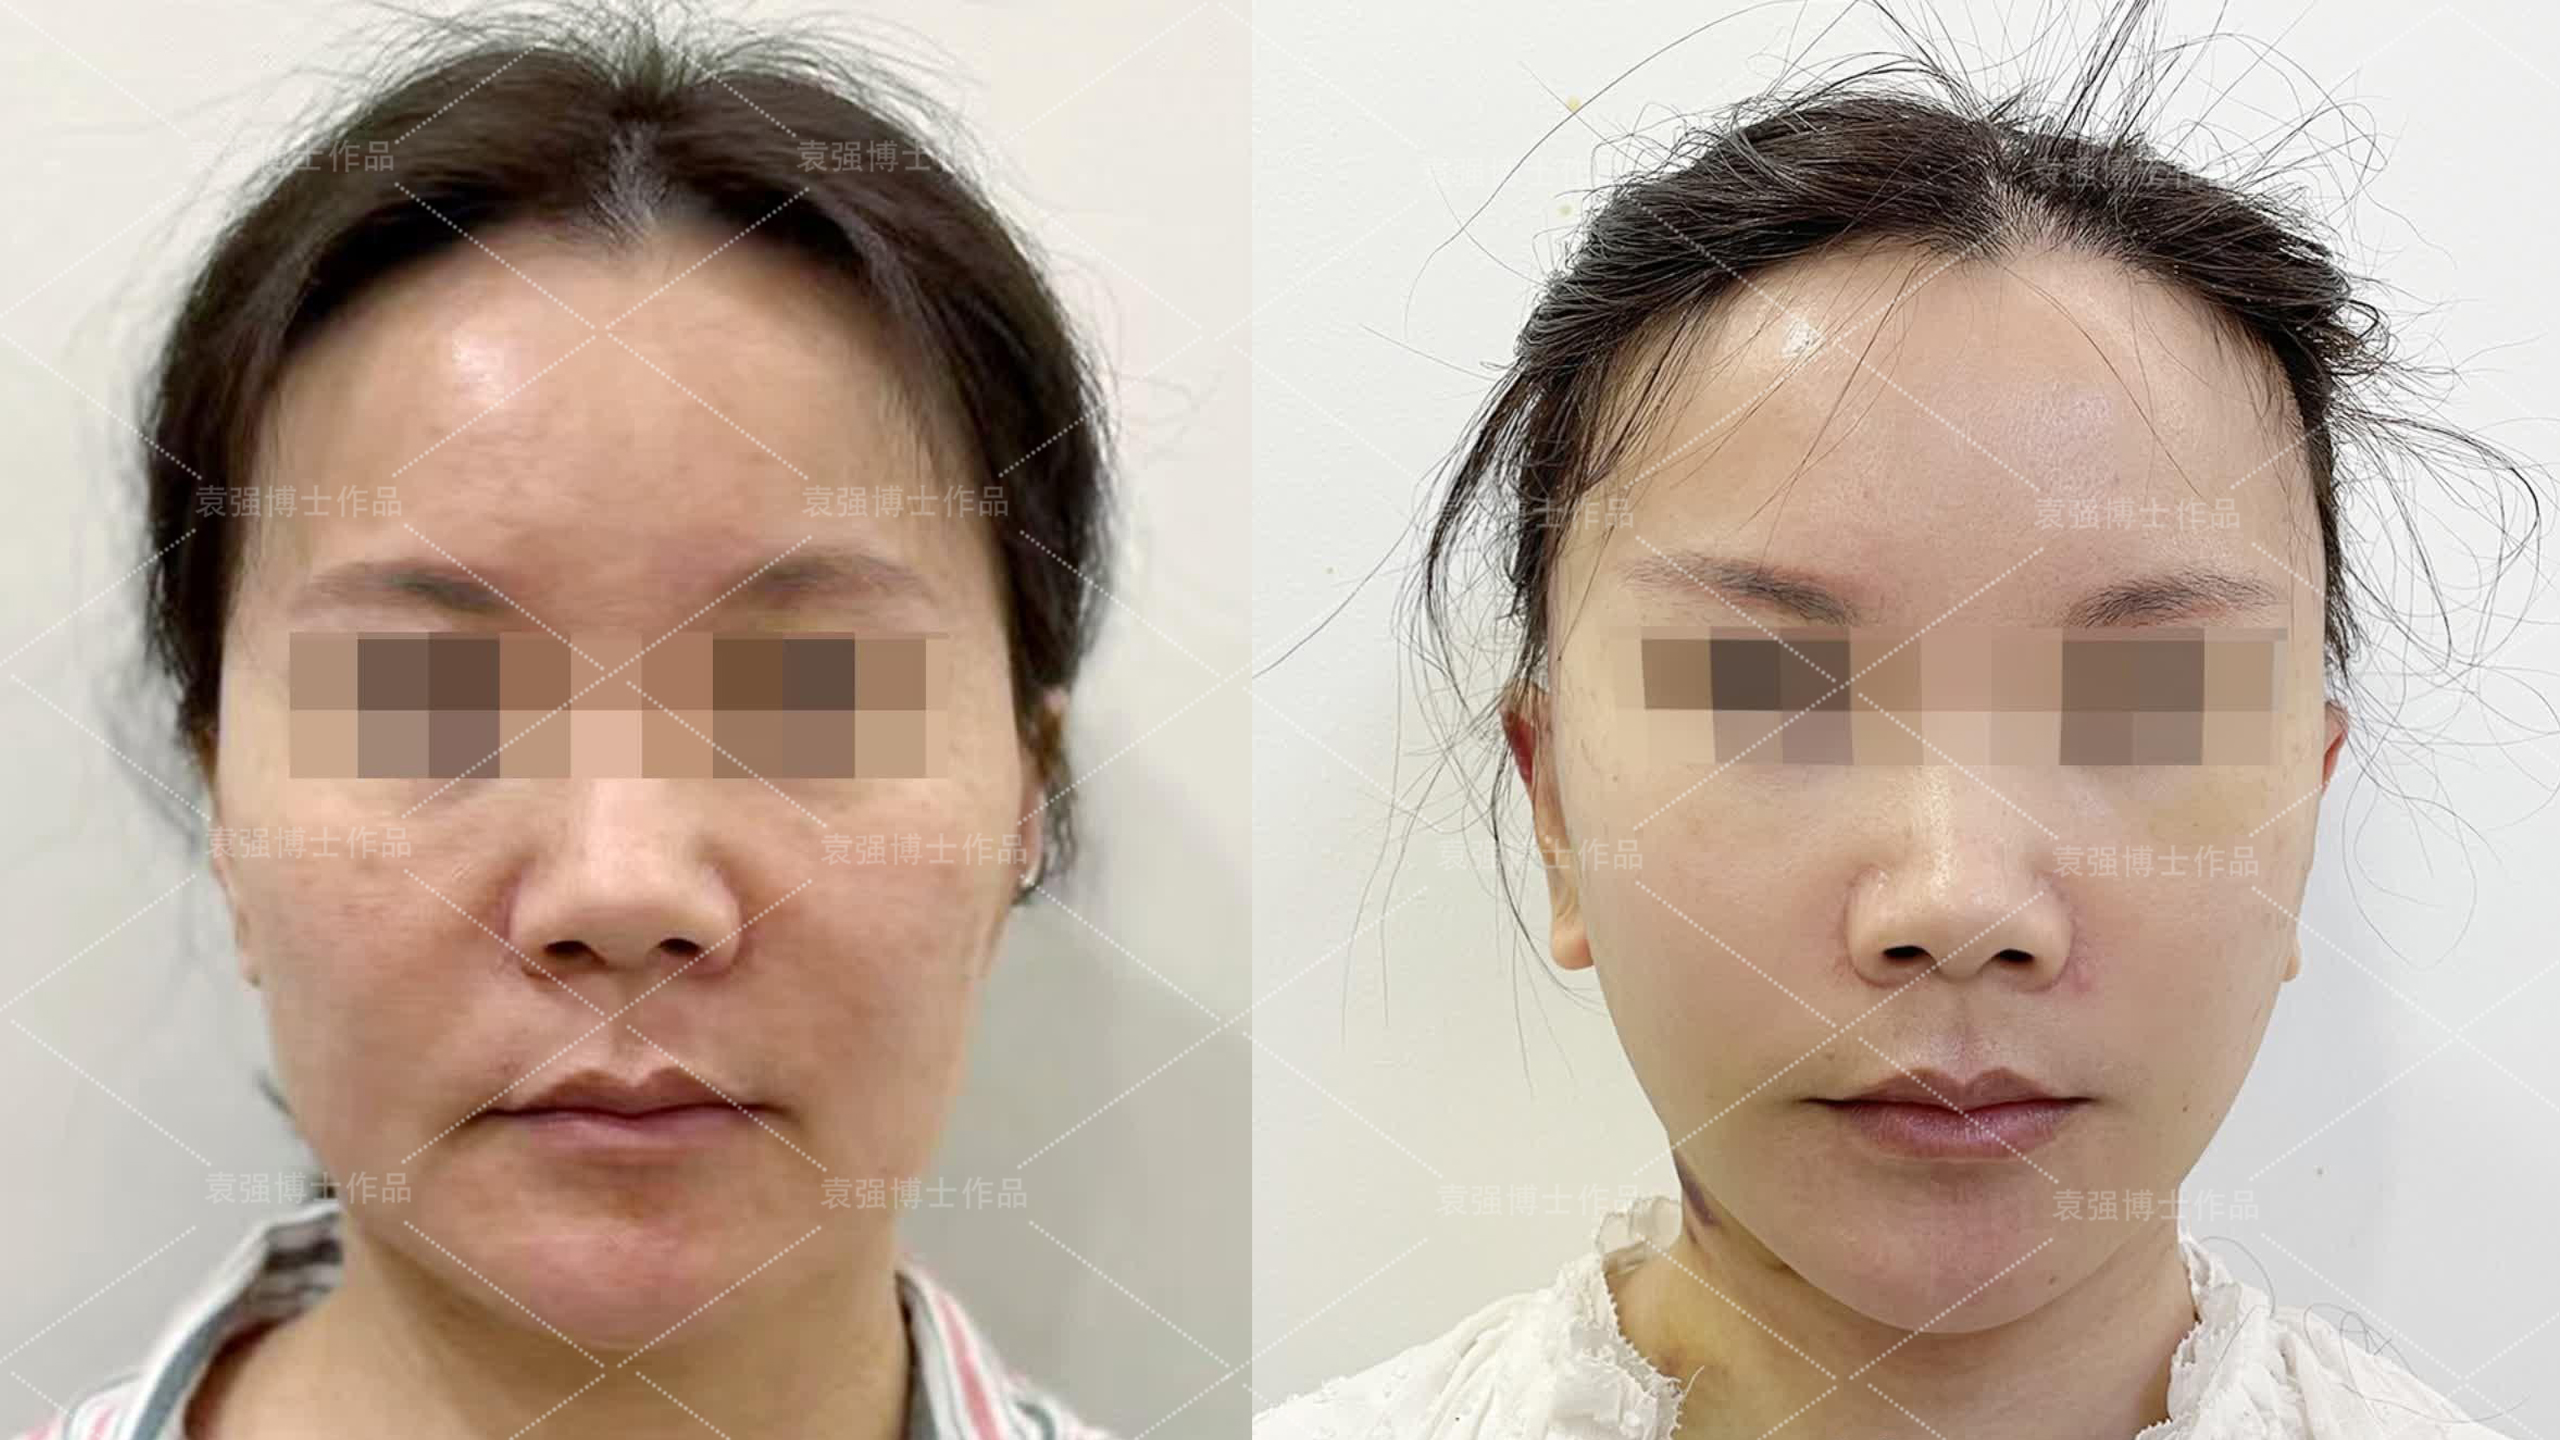 上海华美医疗美容医院V-LINE瓜子脸手术怎么样_恢复过程_效果如何_动感光波哔哔整形日记6.13_新氧美容整形